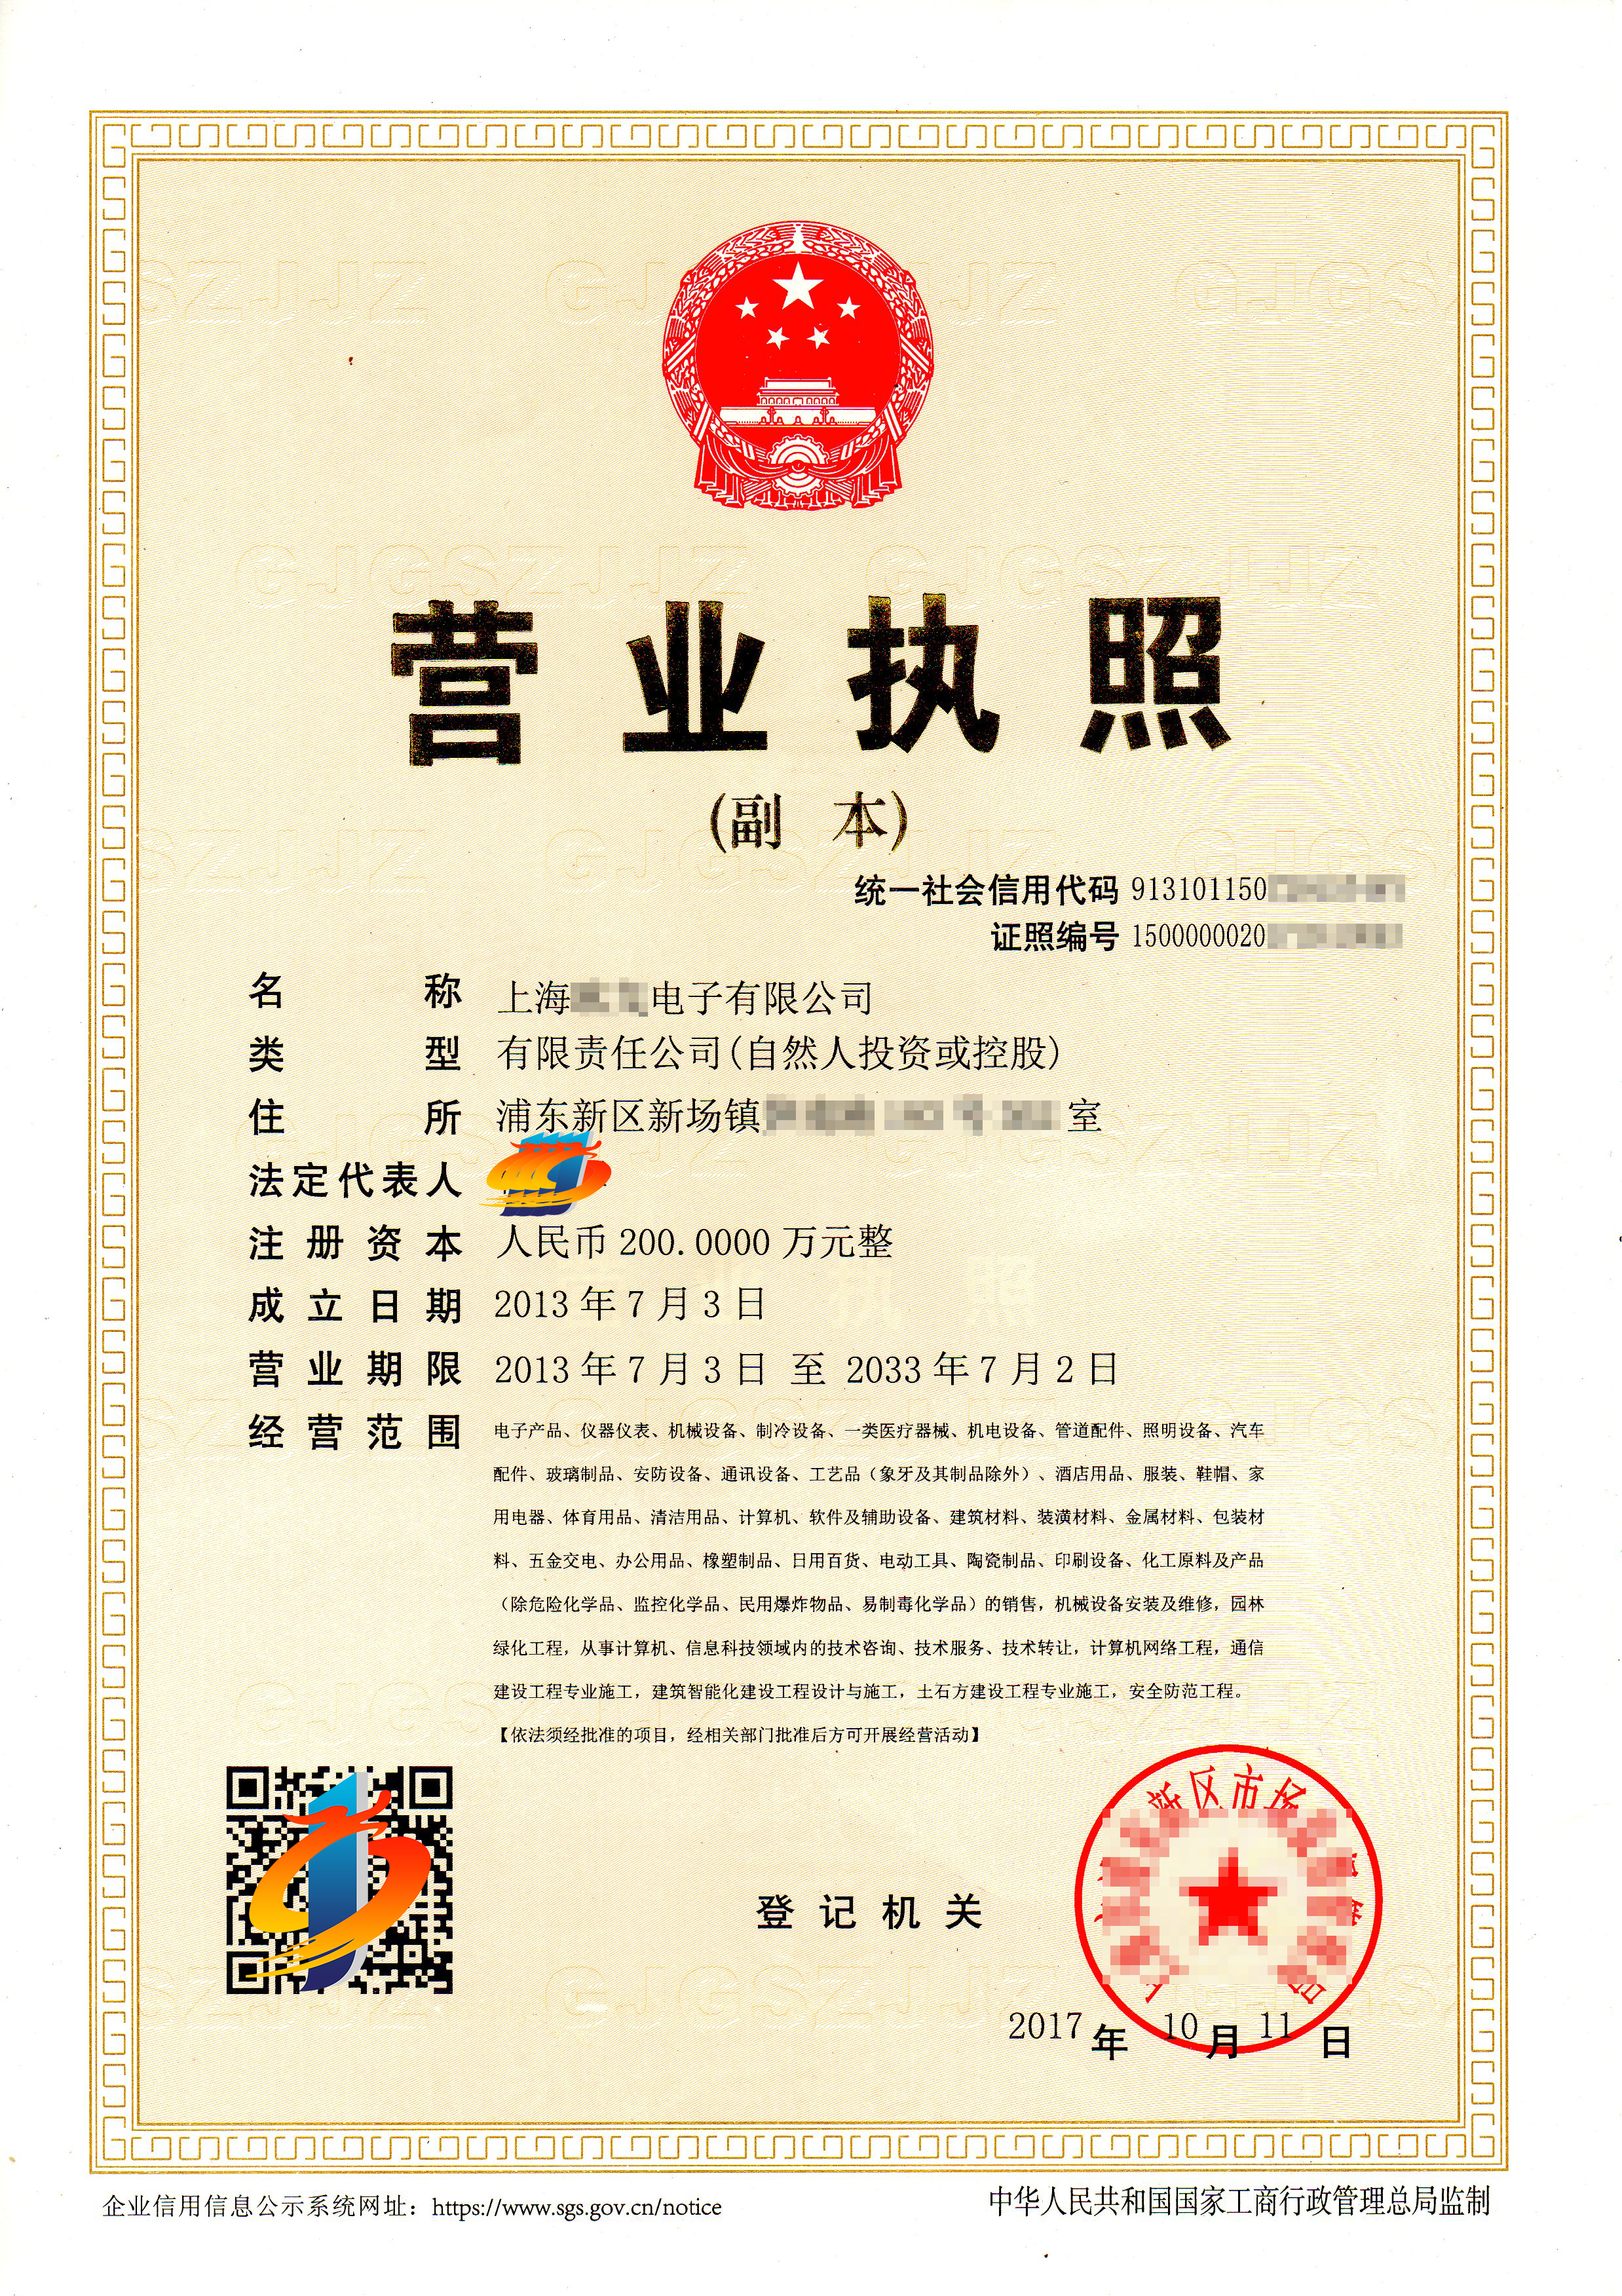 客户注册上海电子公司